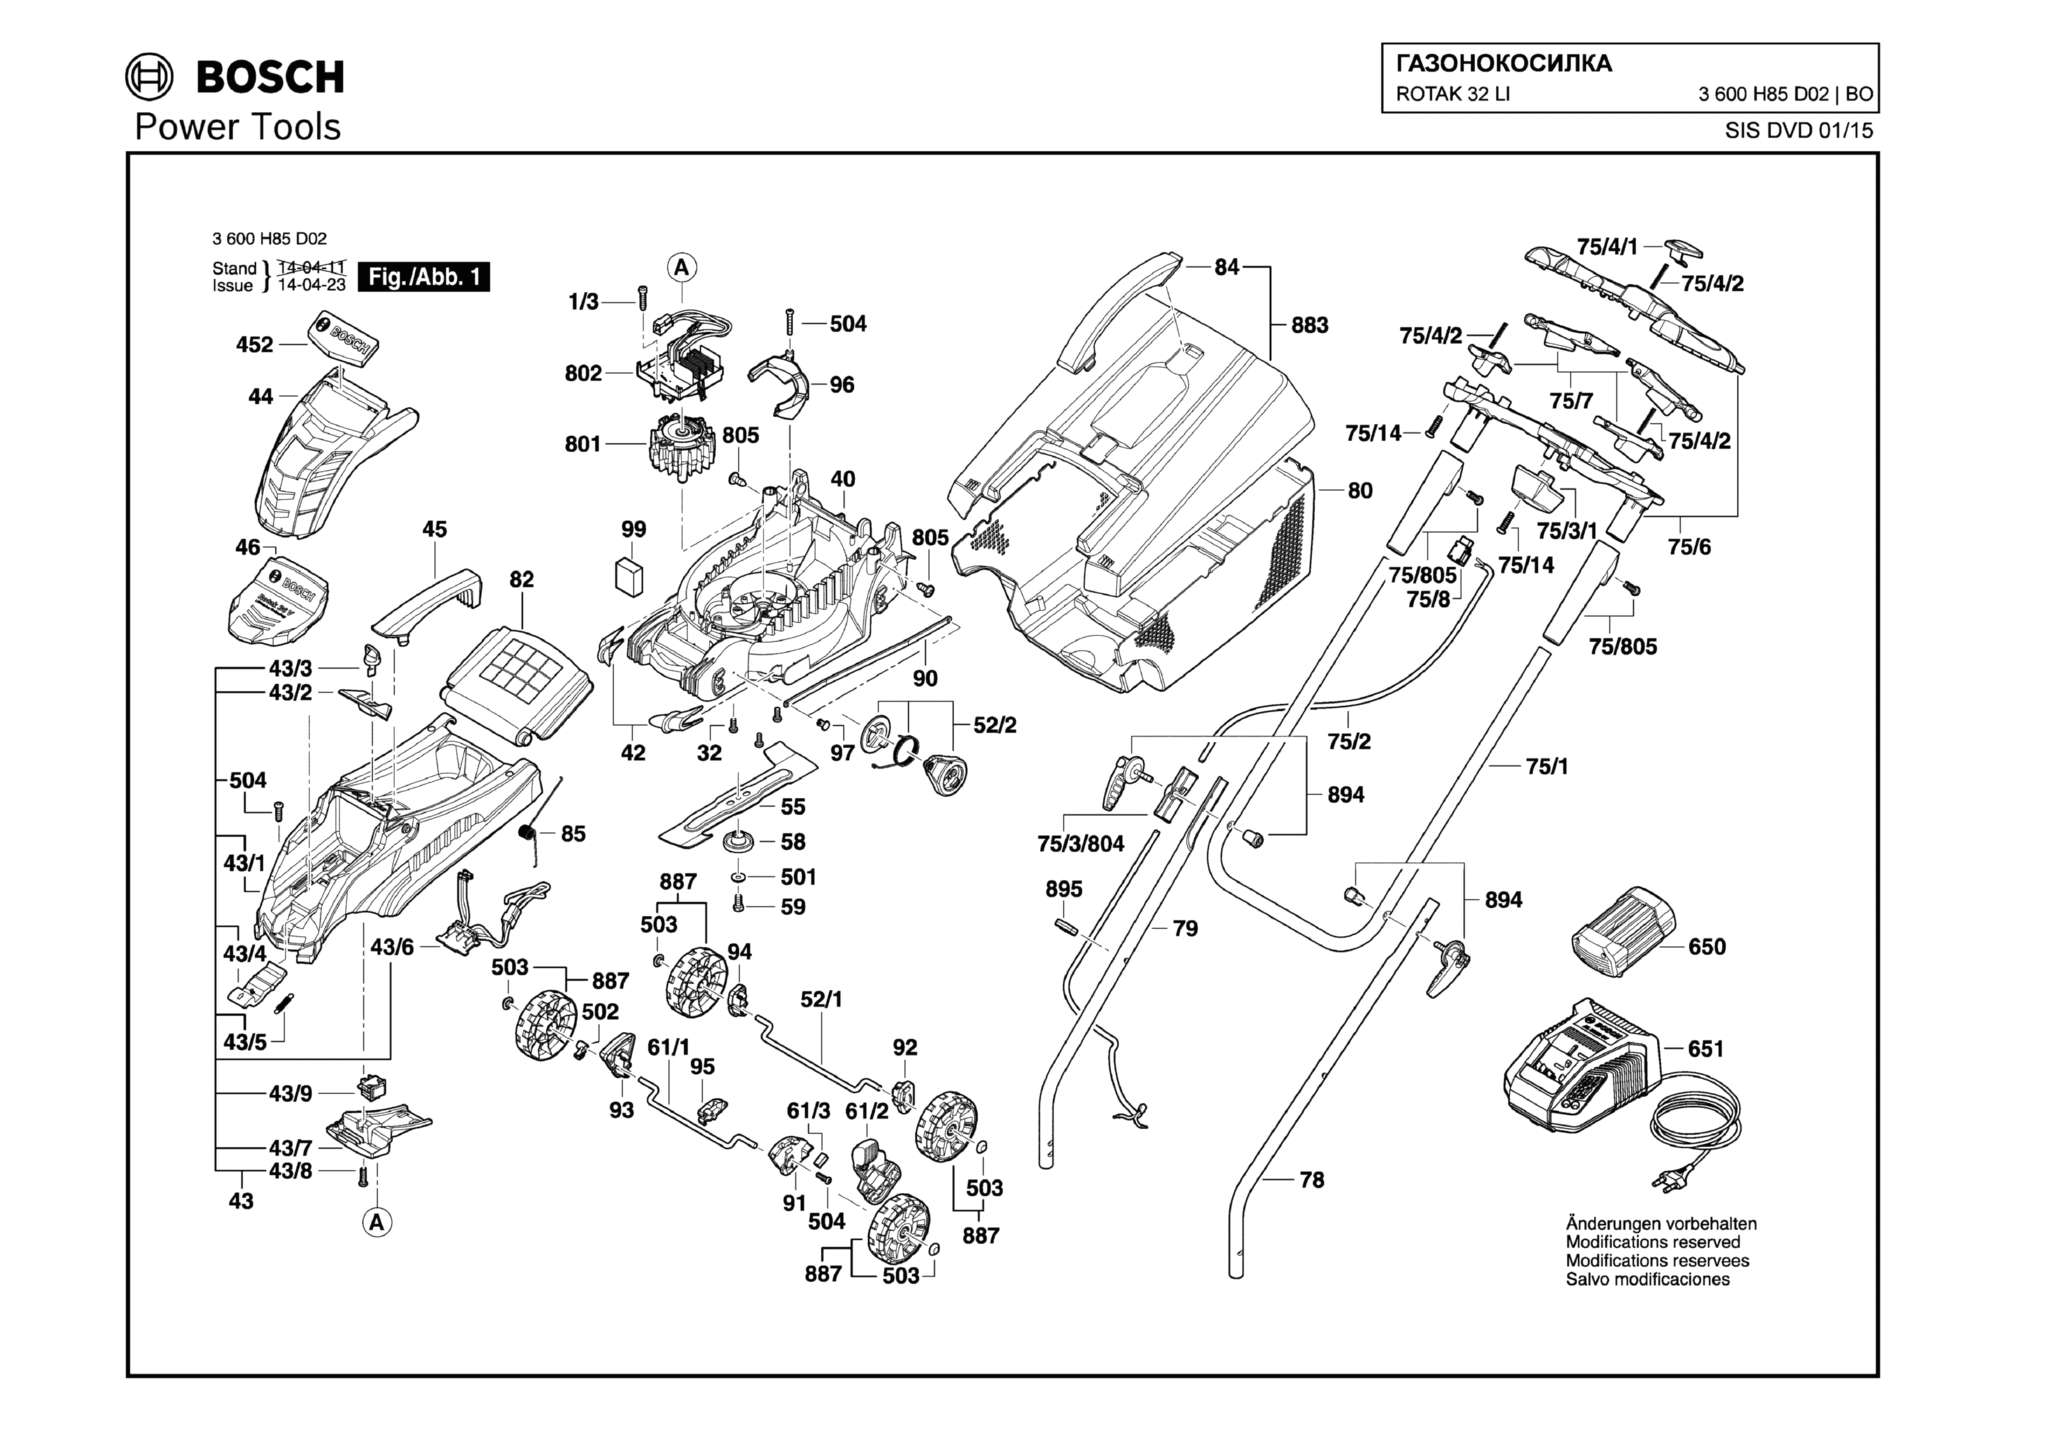 Запчасти, схема и деталировка Bosch ROTAK 32 LI (ТИП 3600H85D02)